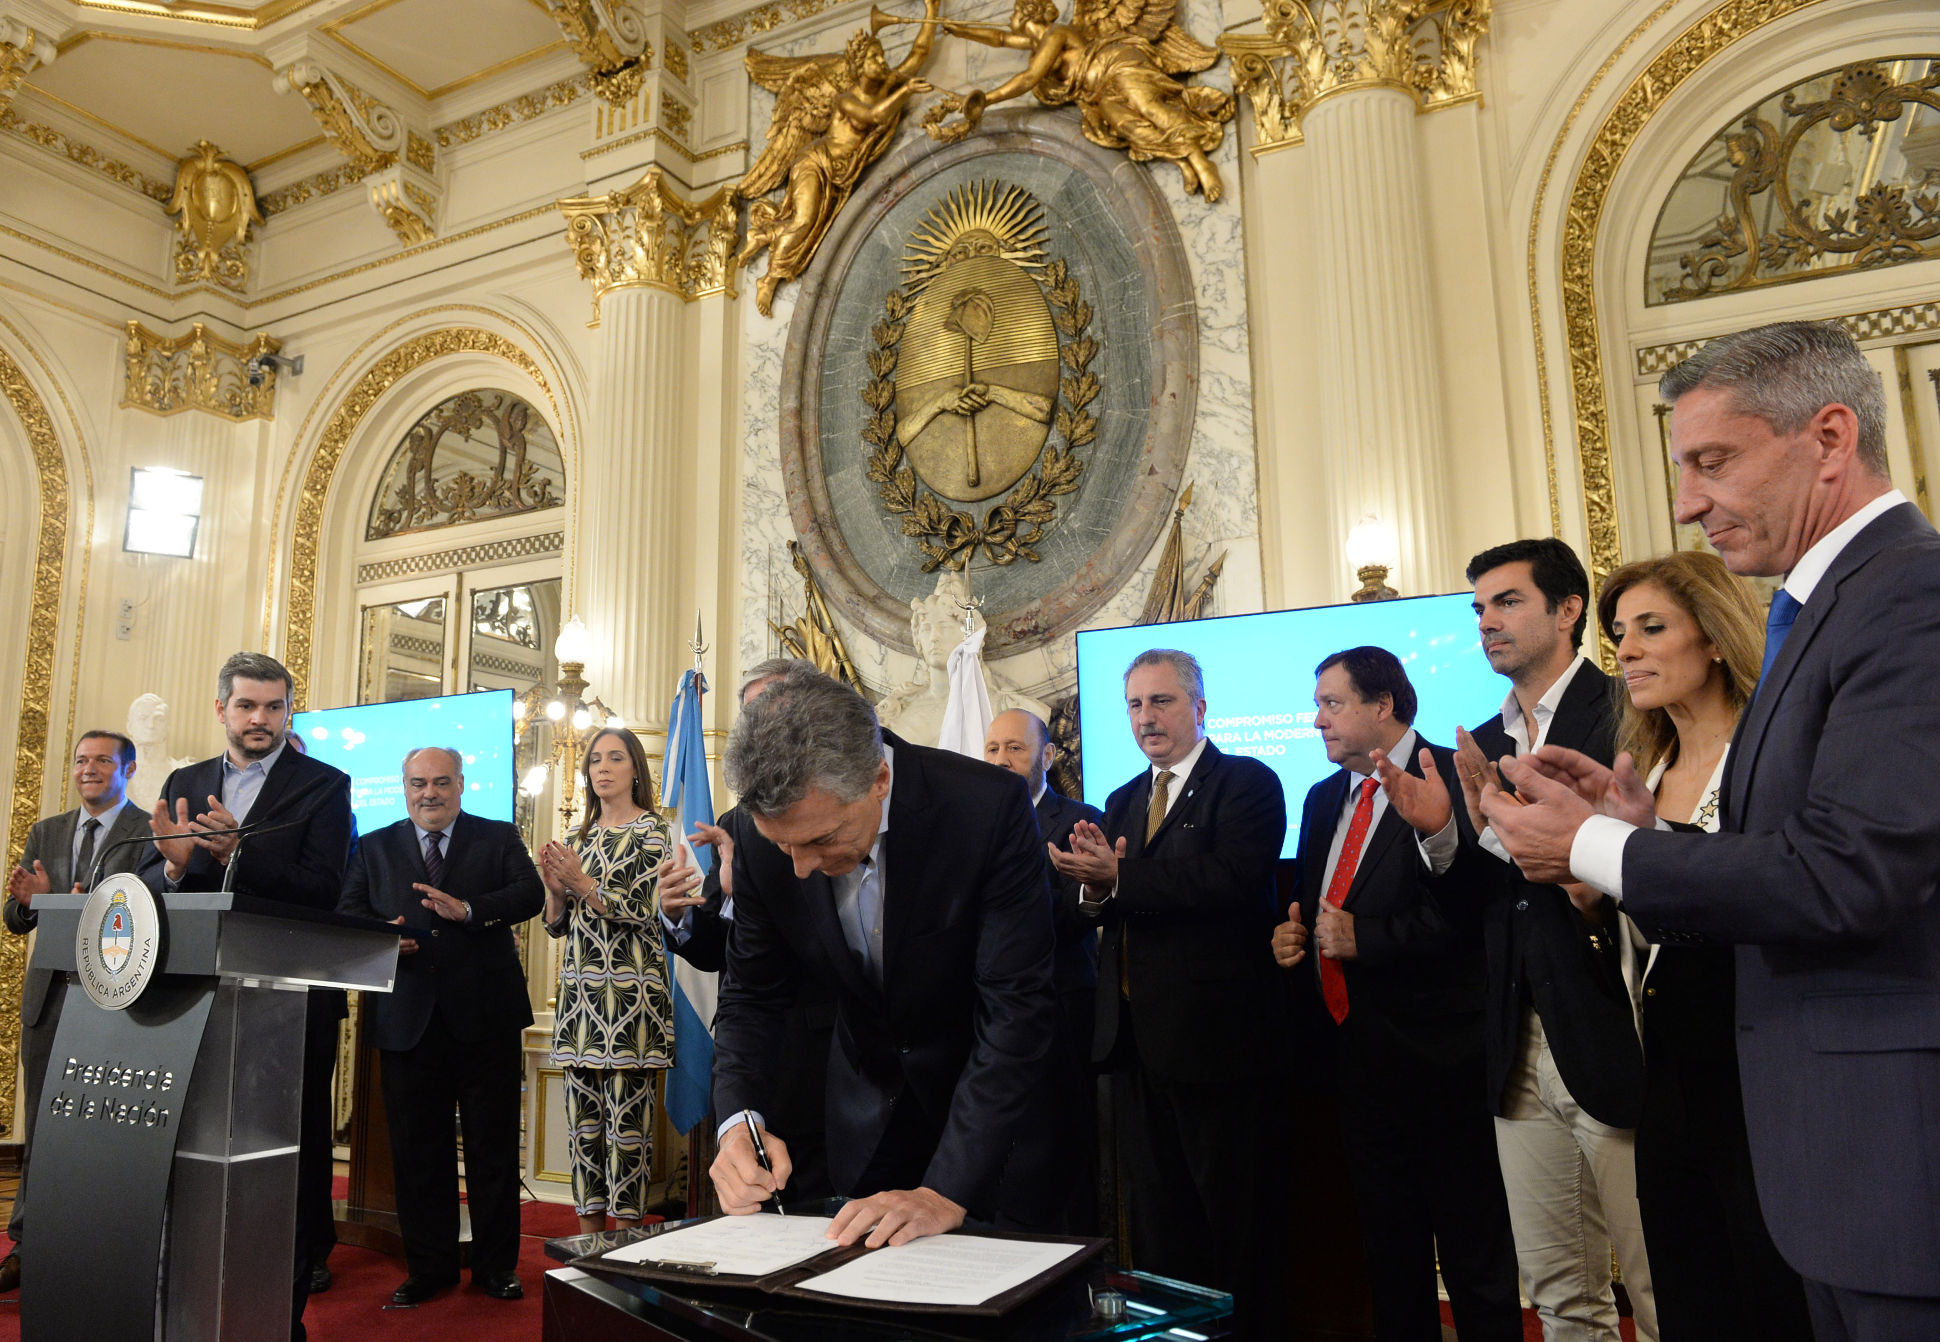 El presidente Macri presentó el Compromiso Federal para la Modernización del Estado